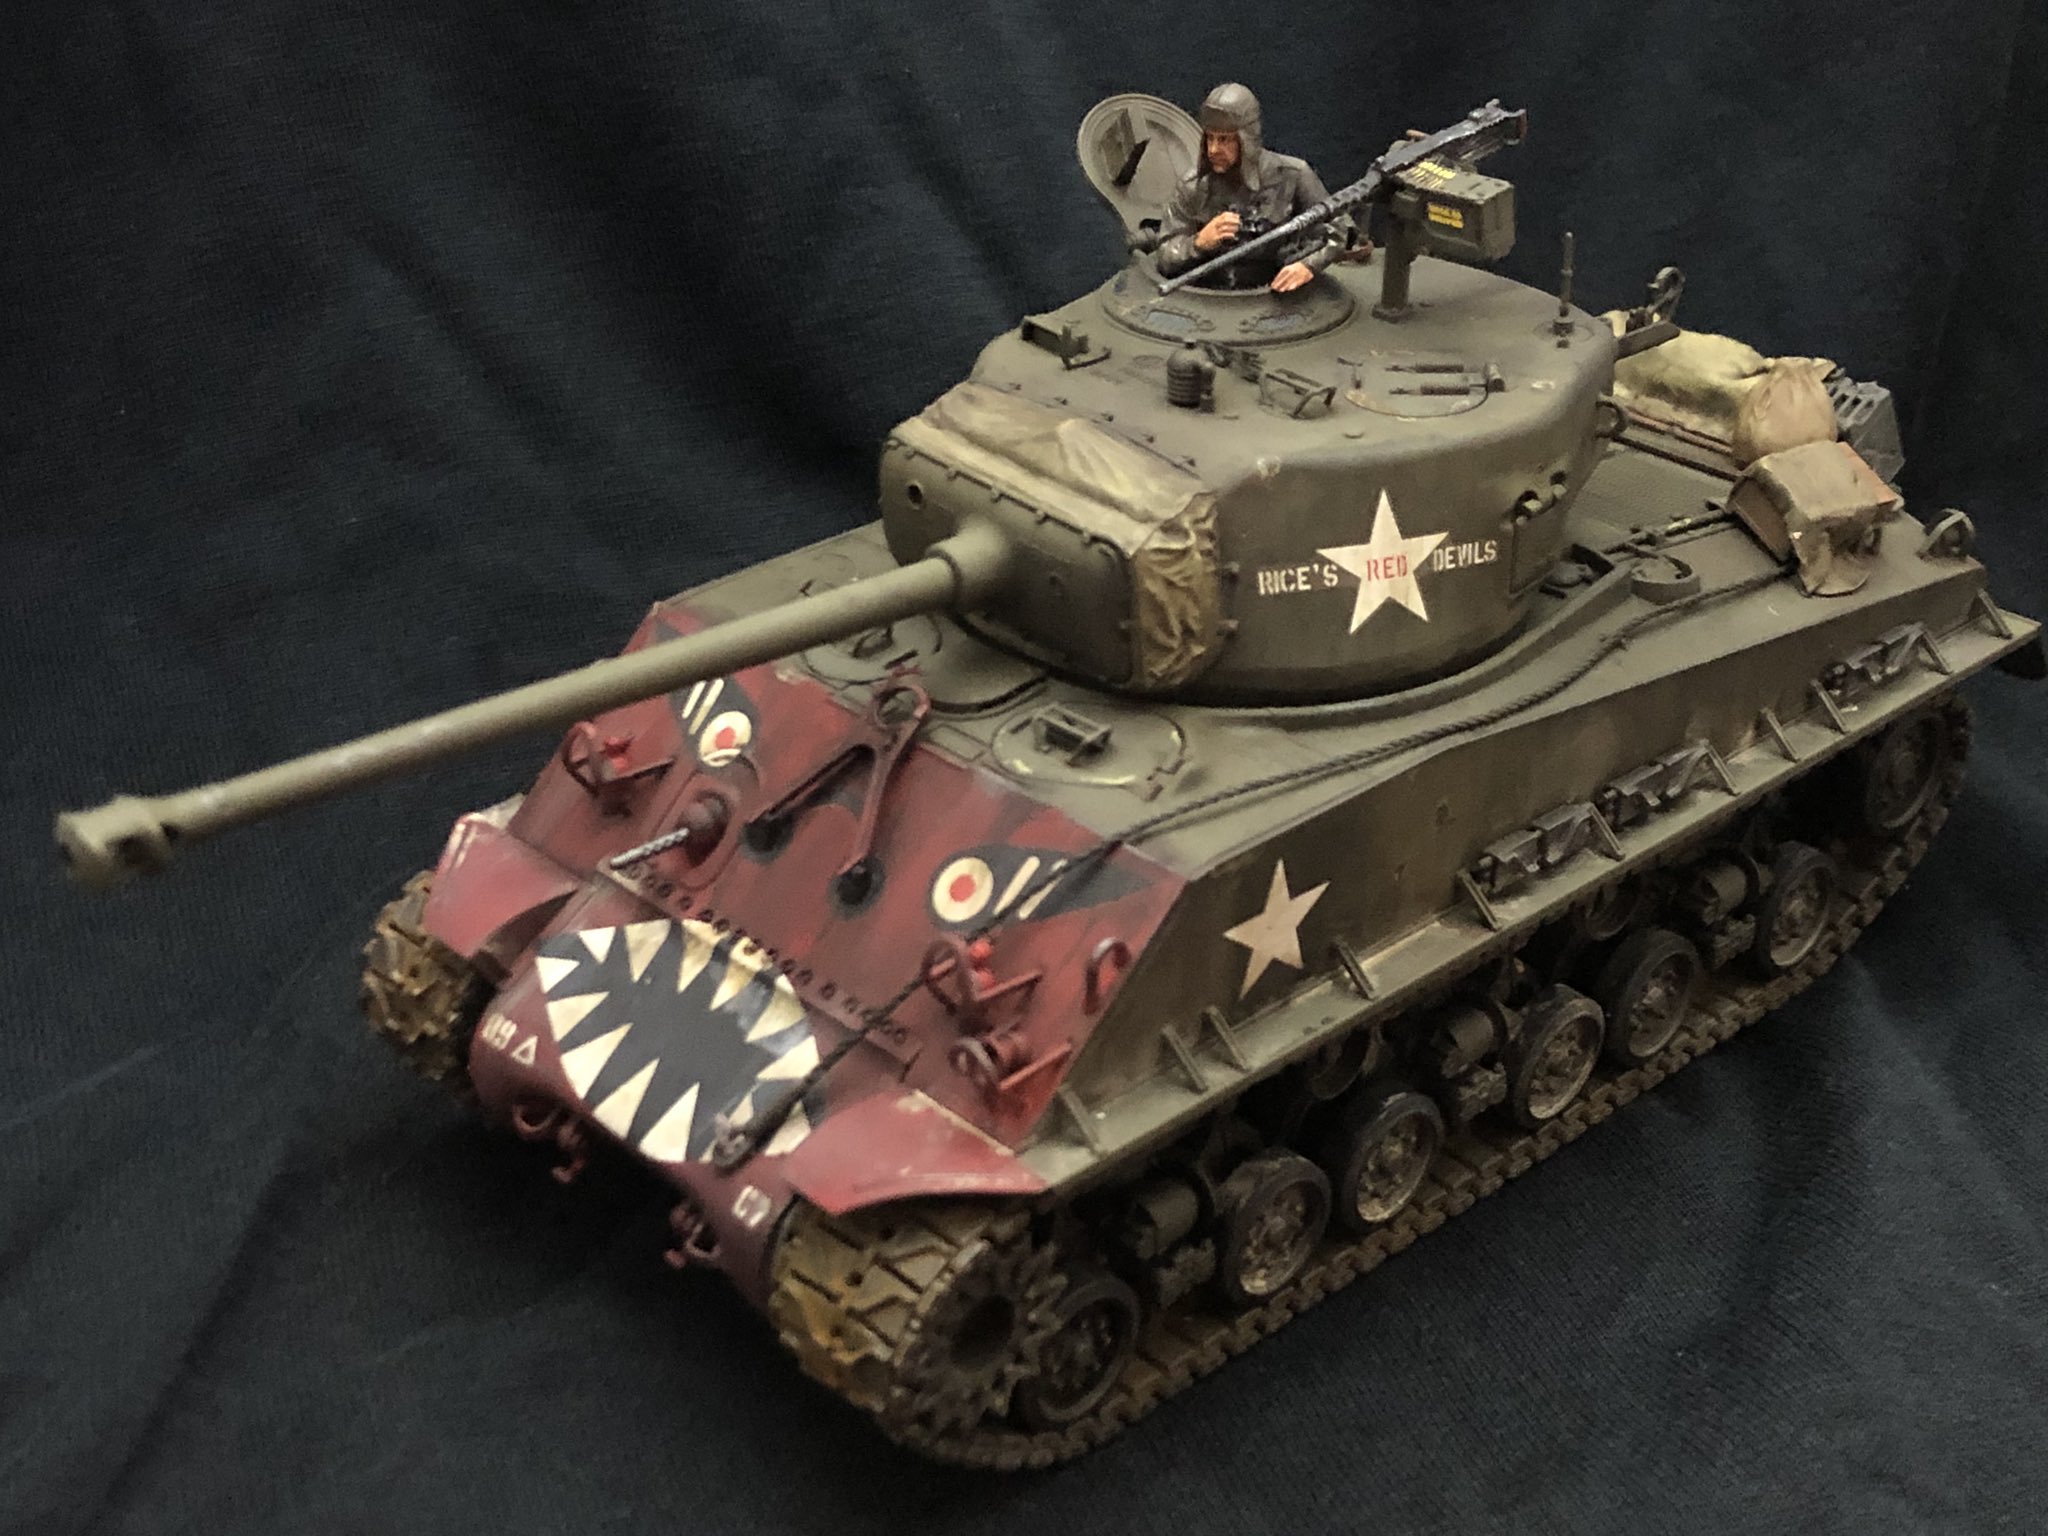 生存者 タミヤ 1 35 M4a3e8 朝鮮戦争 完成しました パッケージアートにもなってる 第戦車大隊c中隊の Rice S Red Devils 仕様にしました 戦車の前面が真っ赤なのはやっぱり独特でカッコいいですね T Co Dv9mnssry0 Twitter